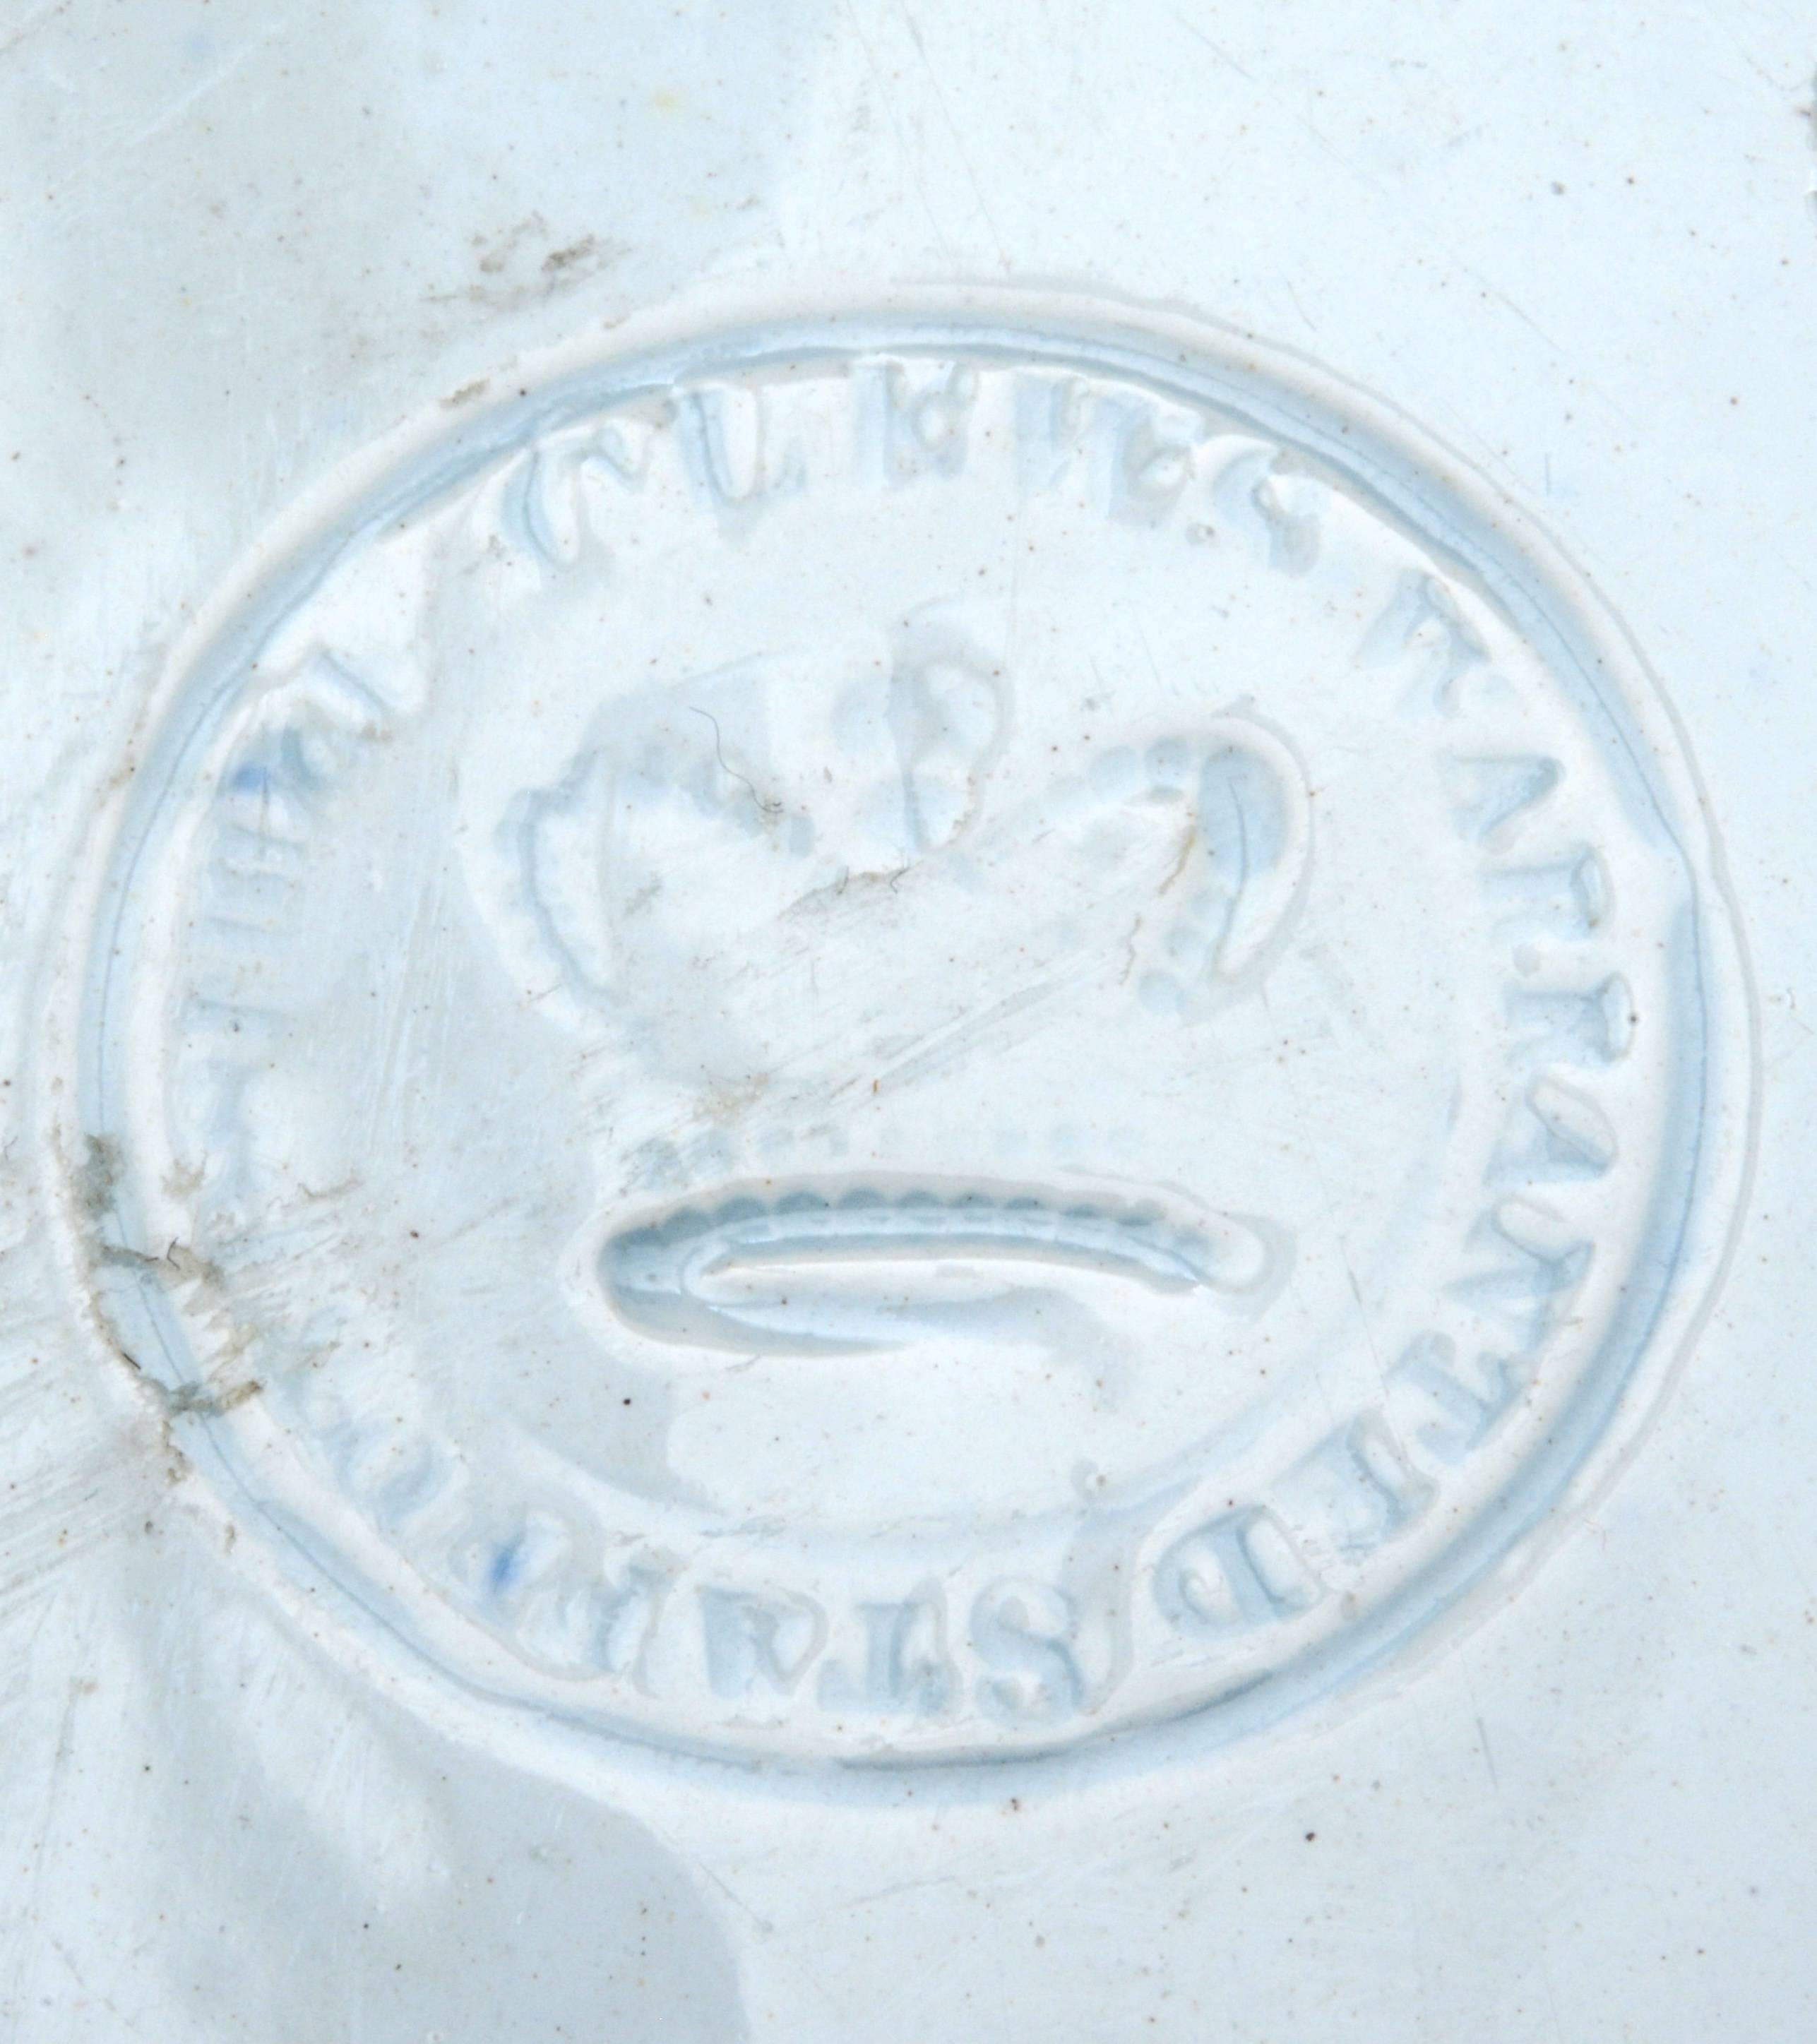 Landing of General Lafayette Staffordshire Plate by James and Ralph Clews, circa 1830. Cette assiette Staffordshire bleu profond est fabriquée en faïence blanche avec un transfert bleu. Il a été fabriqué par les frères James et Ralph Clews. La